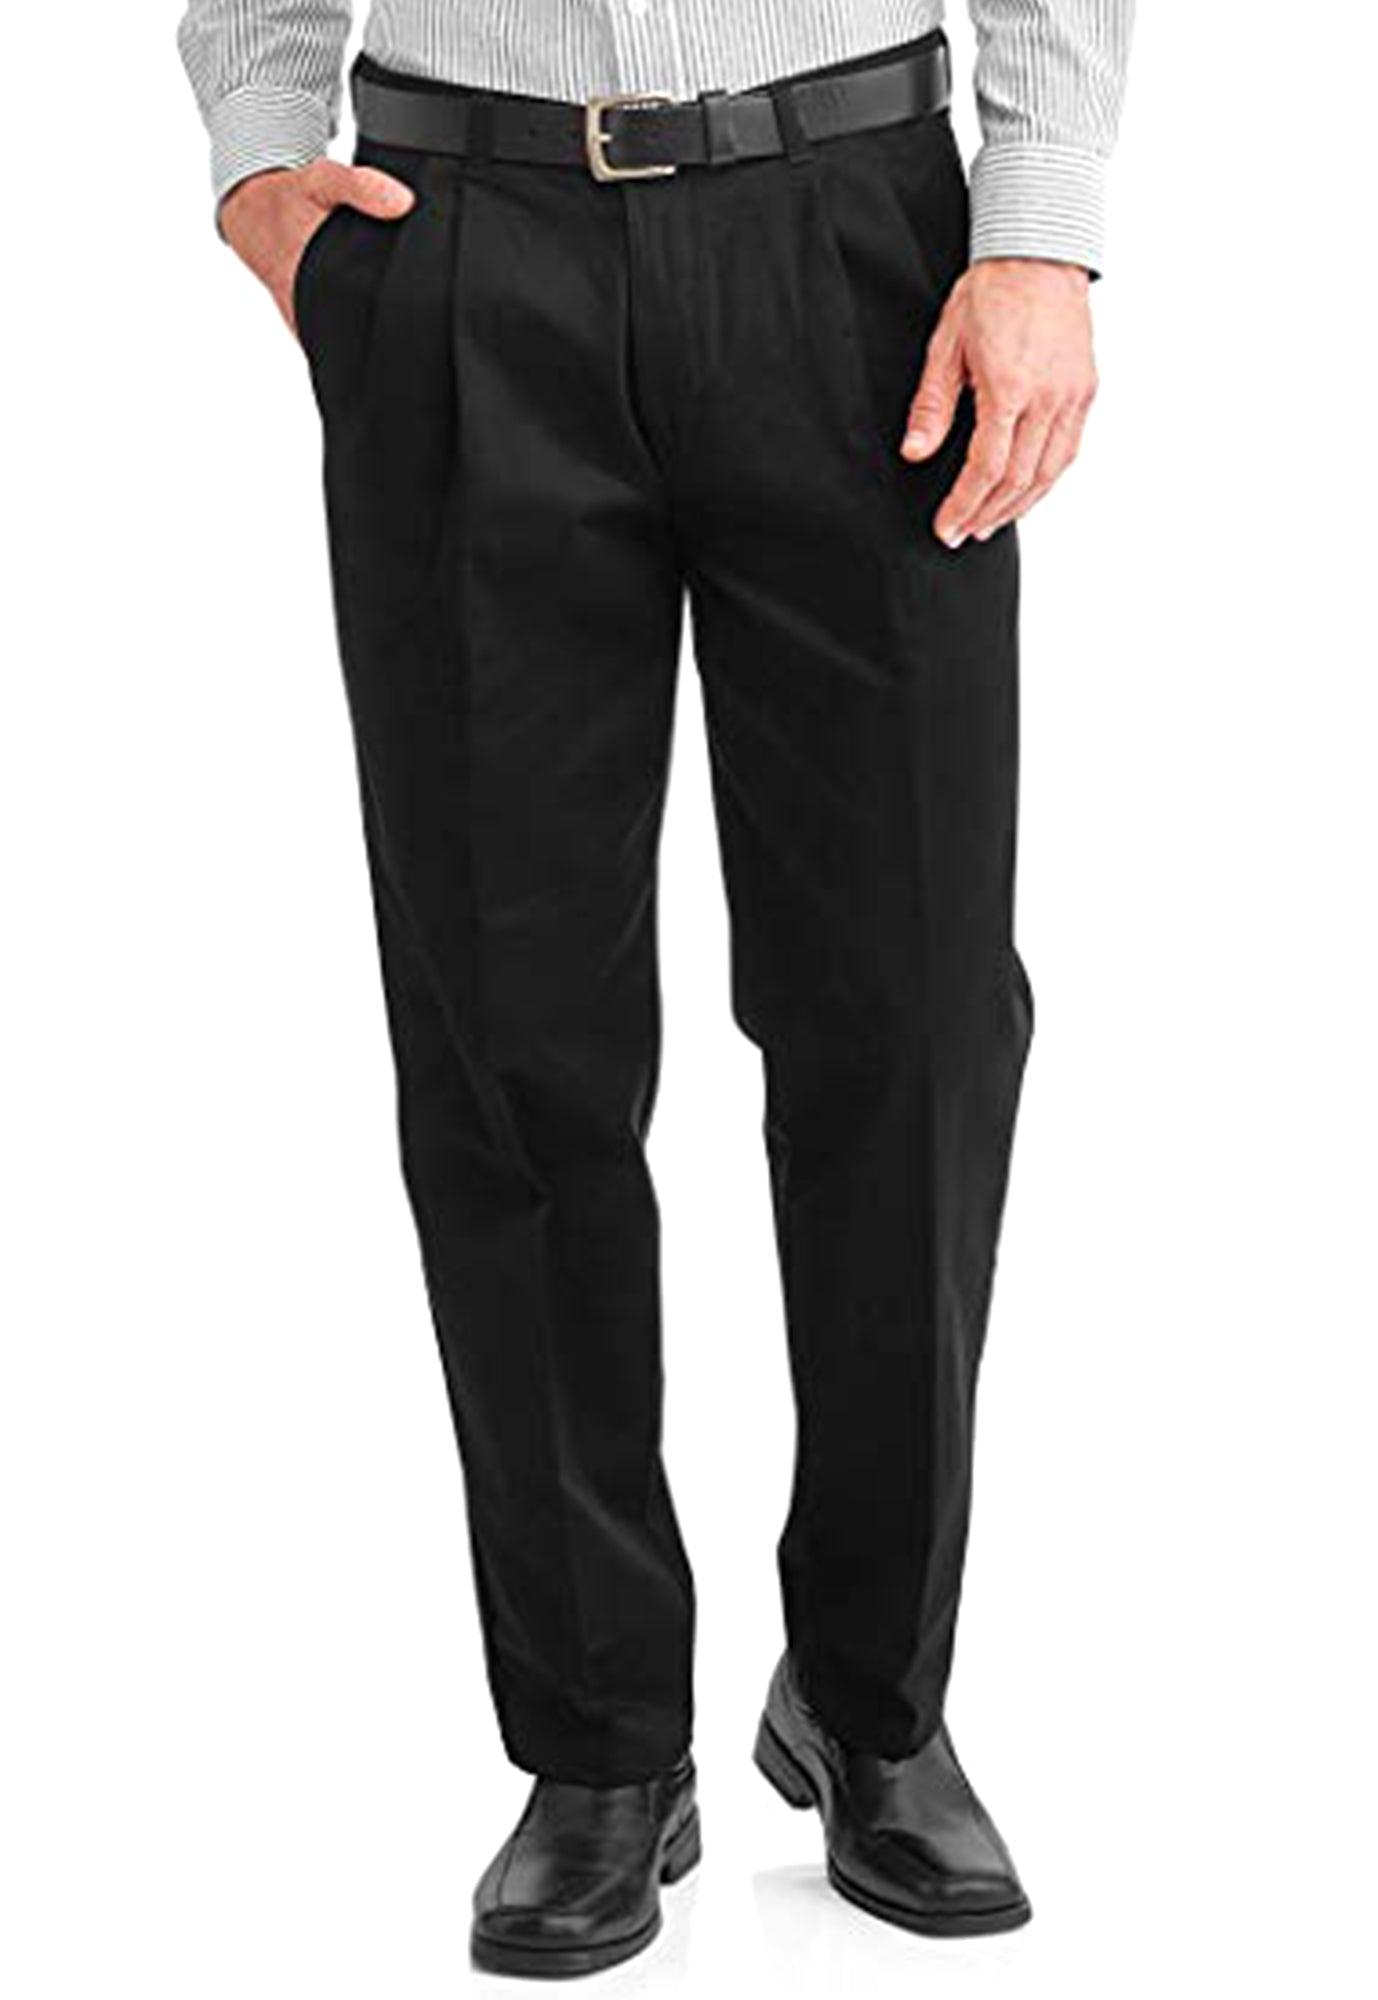 Mens black pleated tuxedo pant/ adjustable waist